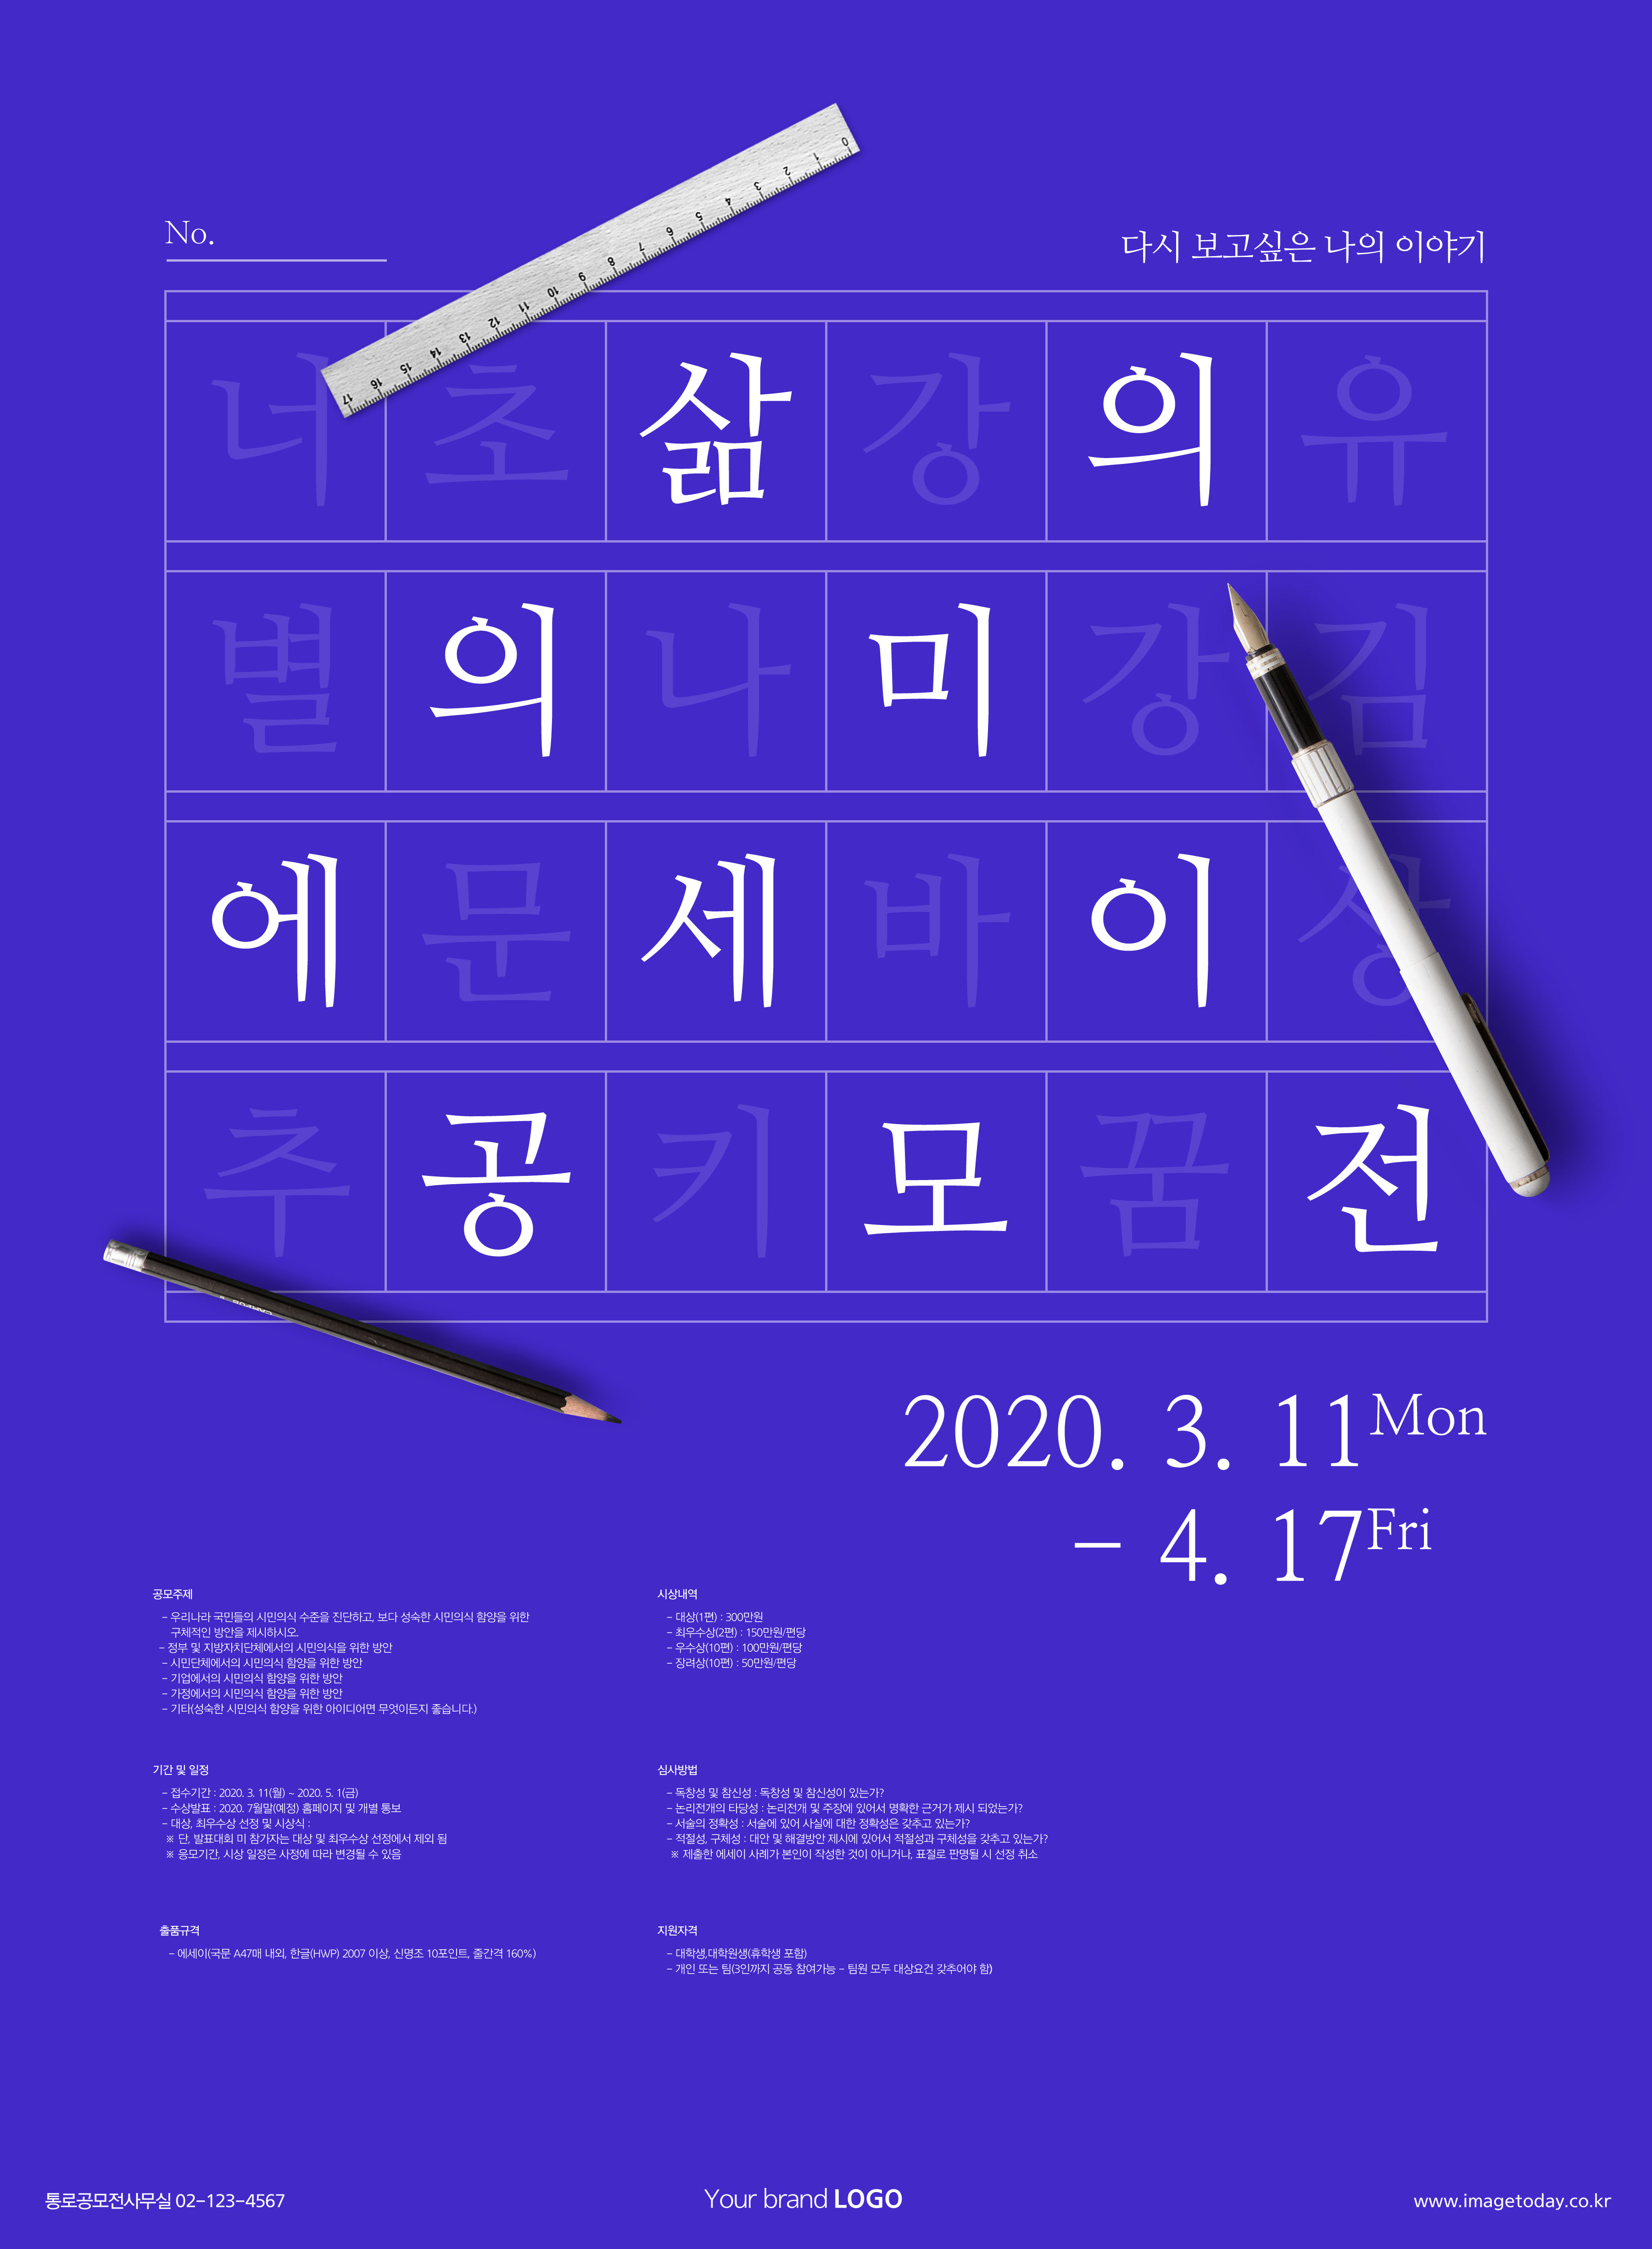 学习测试主题海报PSD素材素材库精选韩国psd素材插图